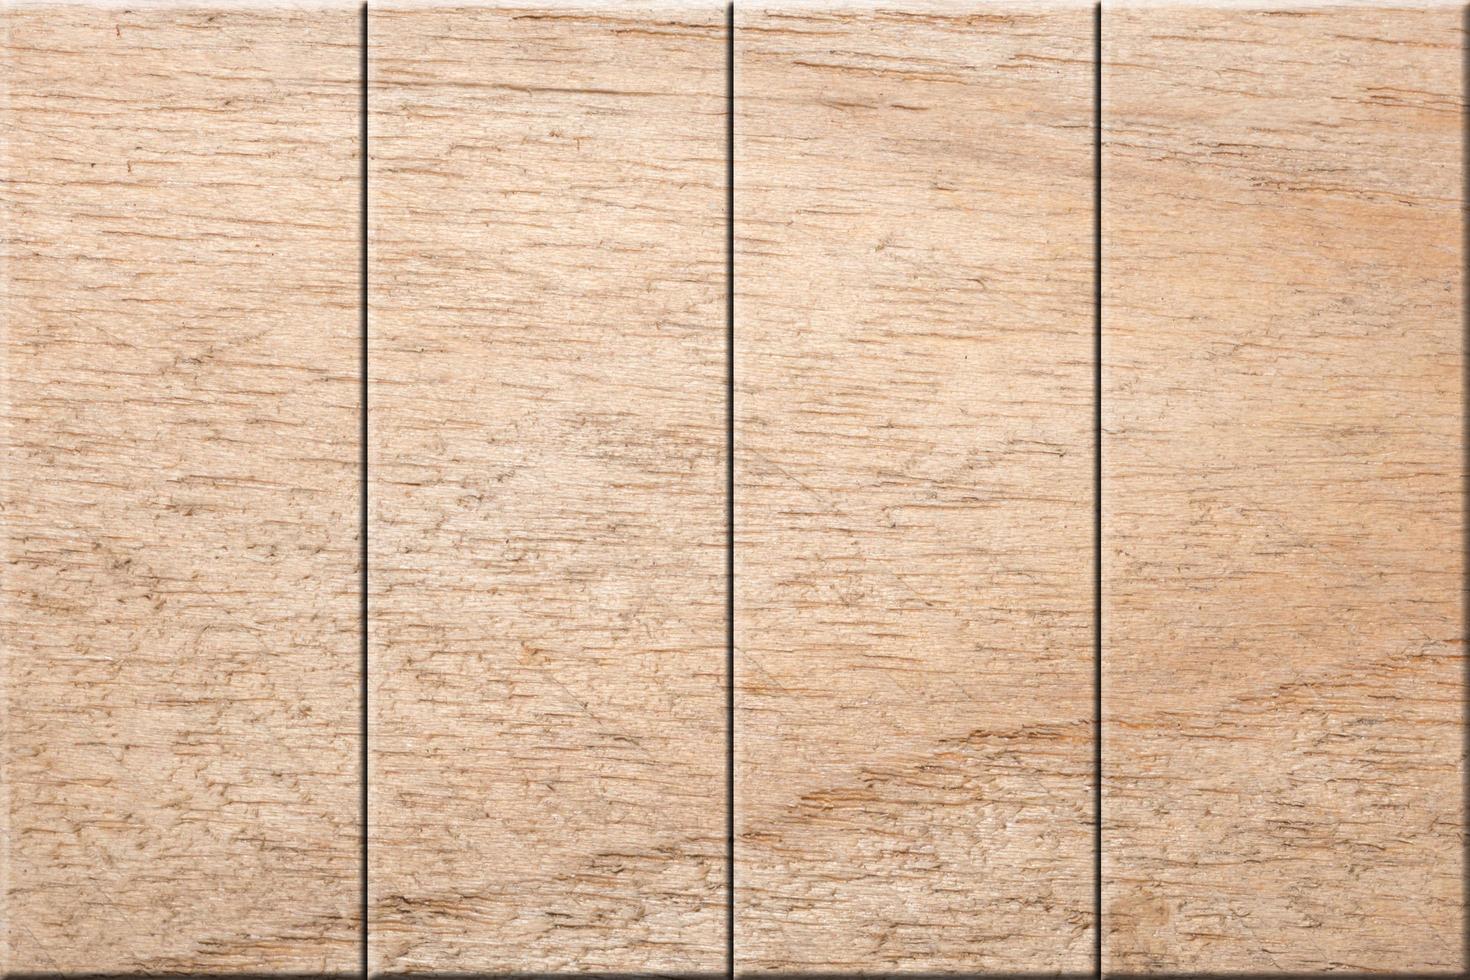 Wooden floor pattern background photo